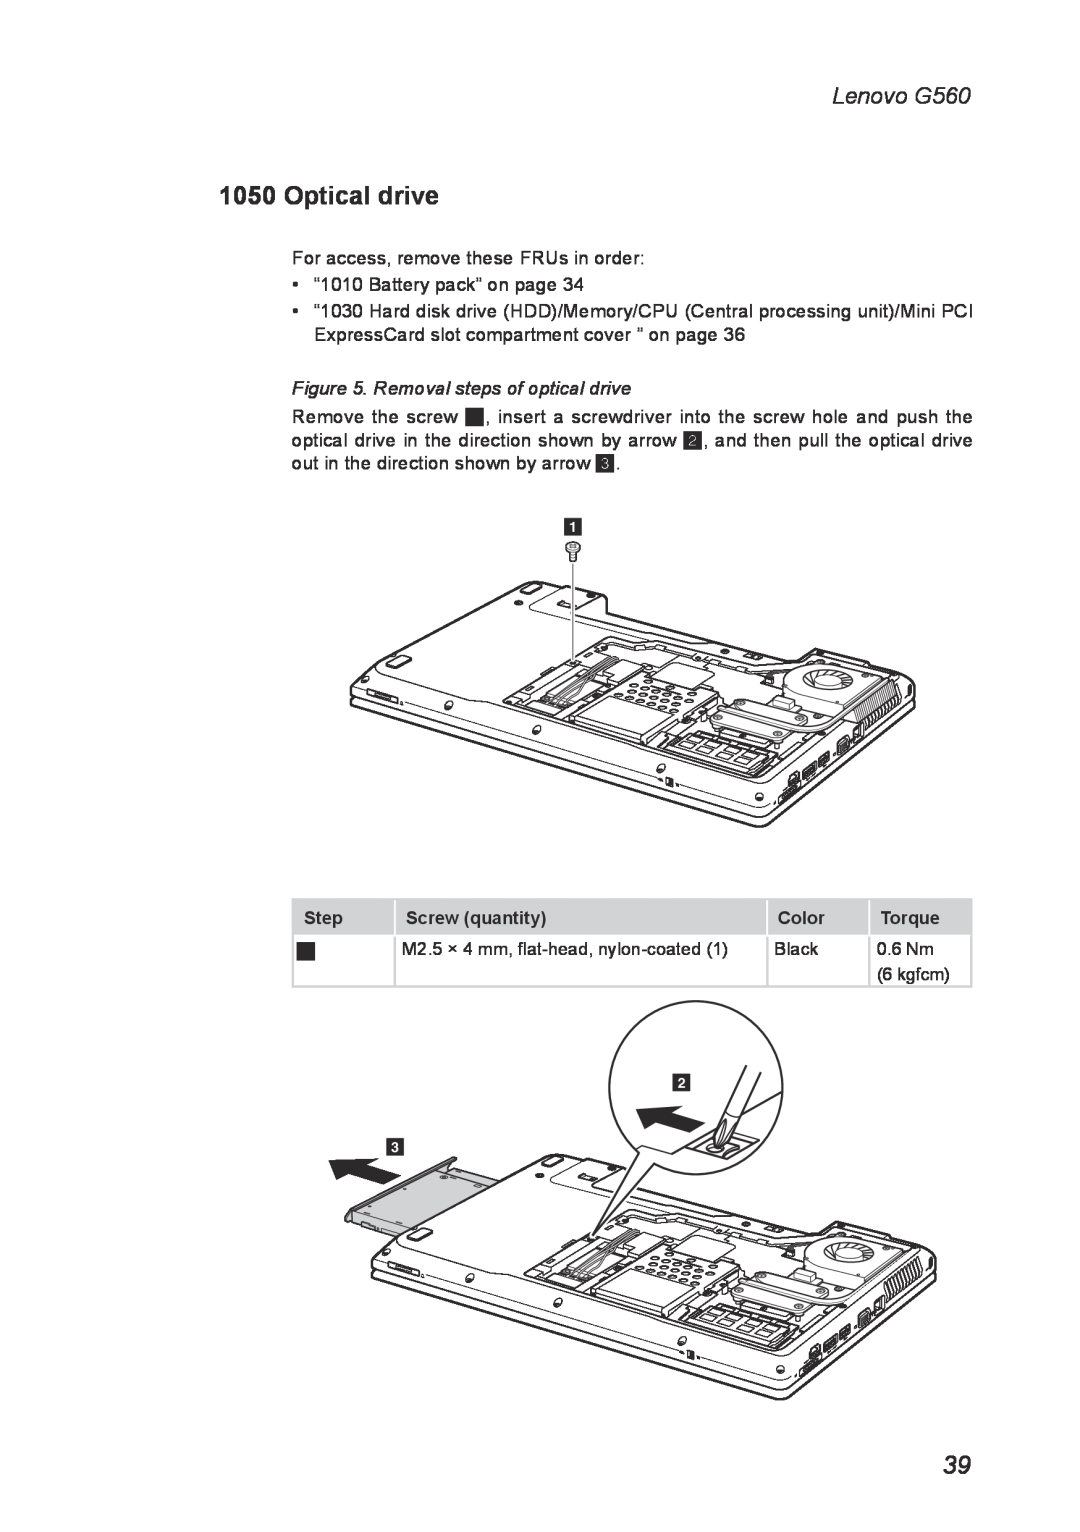 Lenovo manual Optical drive, Lenovo G560, Removal steps of optical drive 